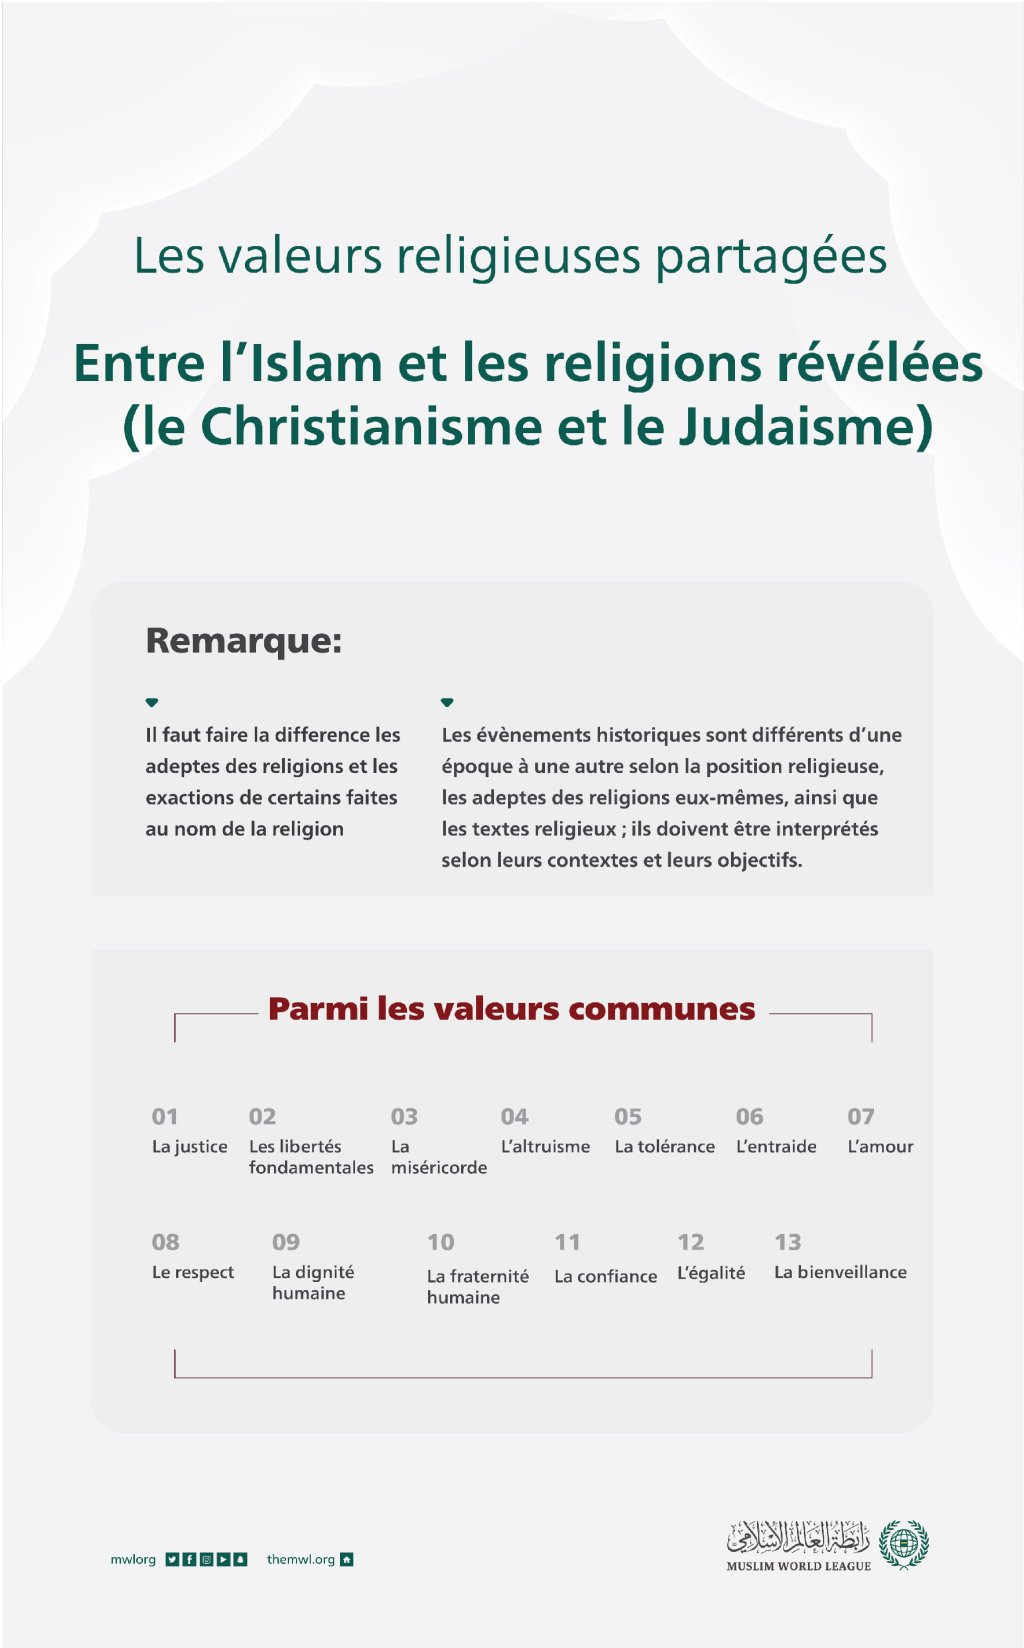 Éclaircissement important concernant les valeurs communes entre l’Islam, le Christianisme et le judaïsme :